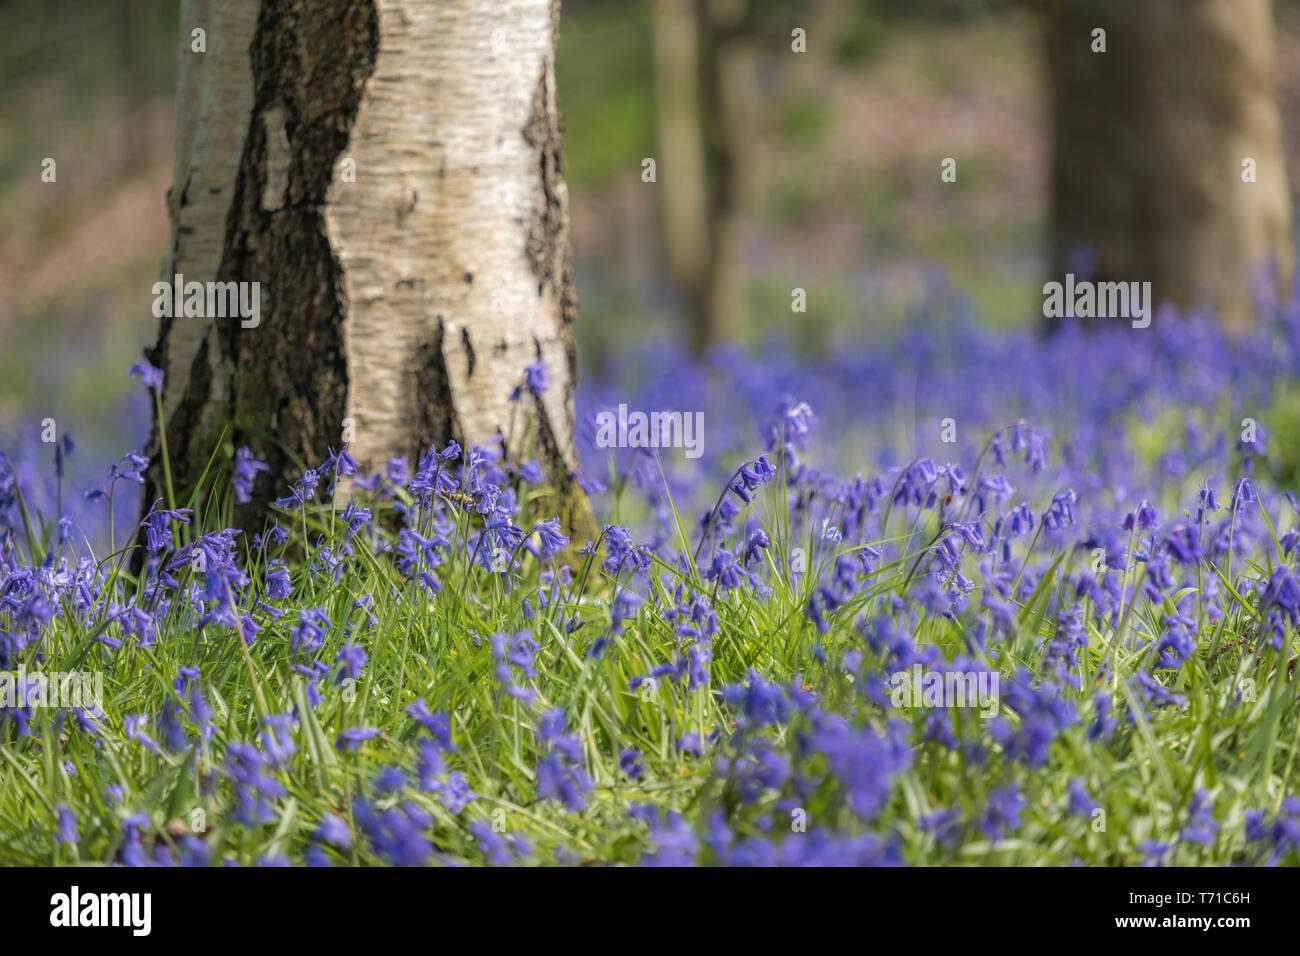 Bluebells in Wäldern in Großbritannien mit der Sonne, niedrige Soft Focus erschossen. Querformat. Stockfoto